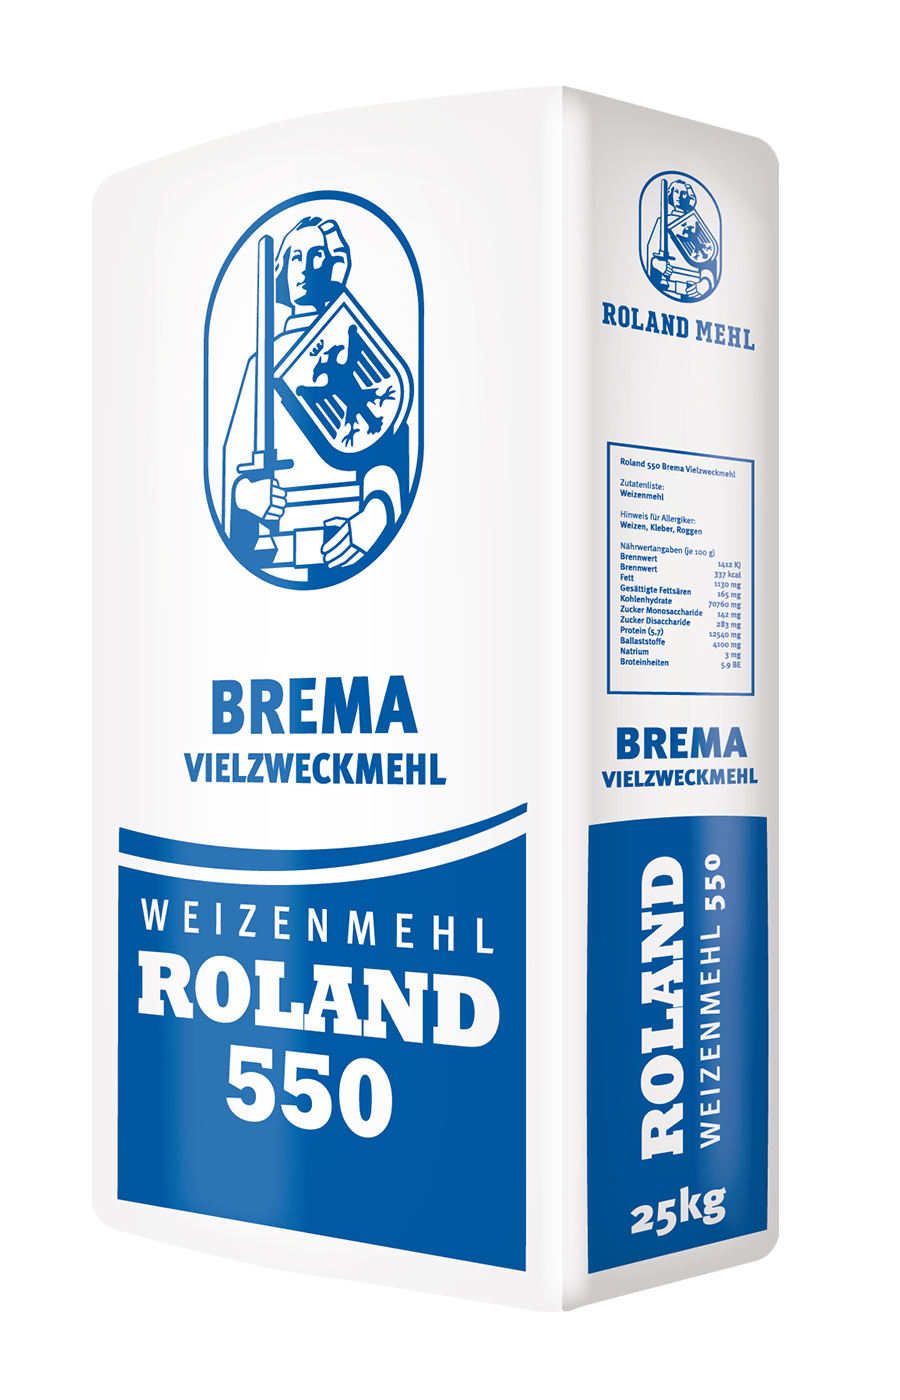 Roland Mills Weizenmehl Type 550 Bremer Vielzweckmehl 25kg